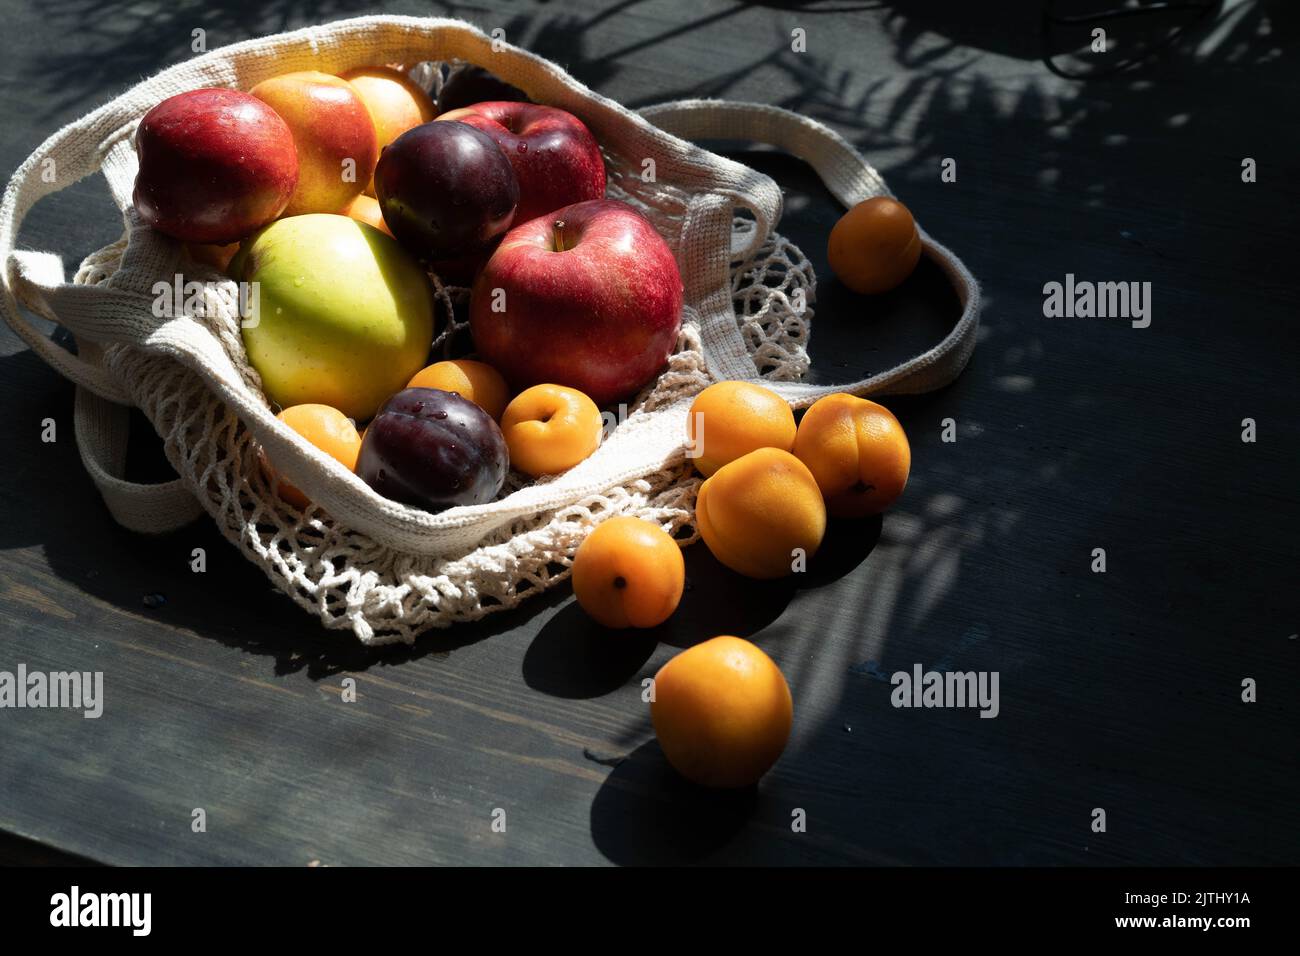 Frische reife Früchte und Beeren auf schwarzem Holzhintergrund in einem ökologischen Netzbeutel. Lifestyle. Harte Schatten.Sonnenlicht.reife Apfelernte. Kirschen, Aprikosen und Pflaumen. Speicherplatz kopieren. Stockfoto